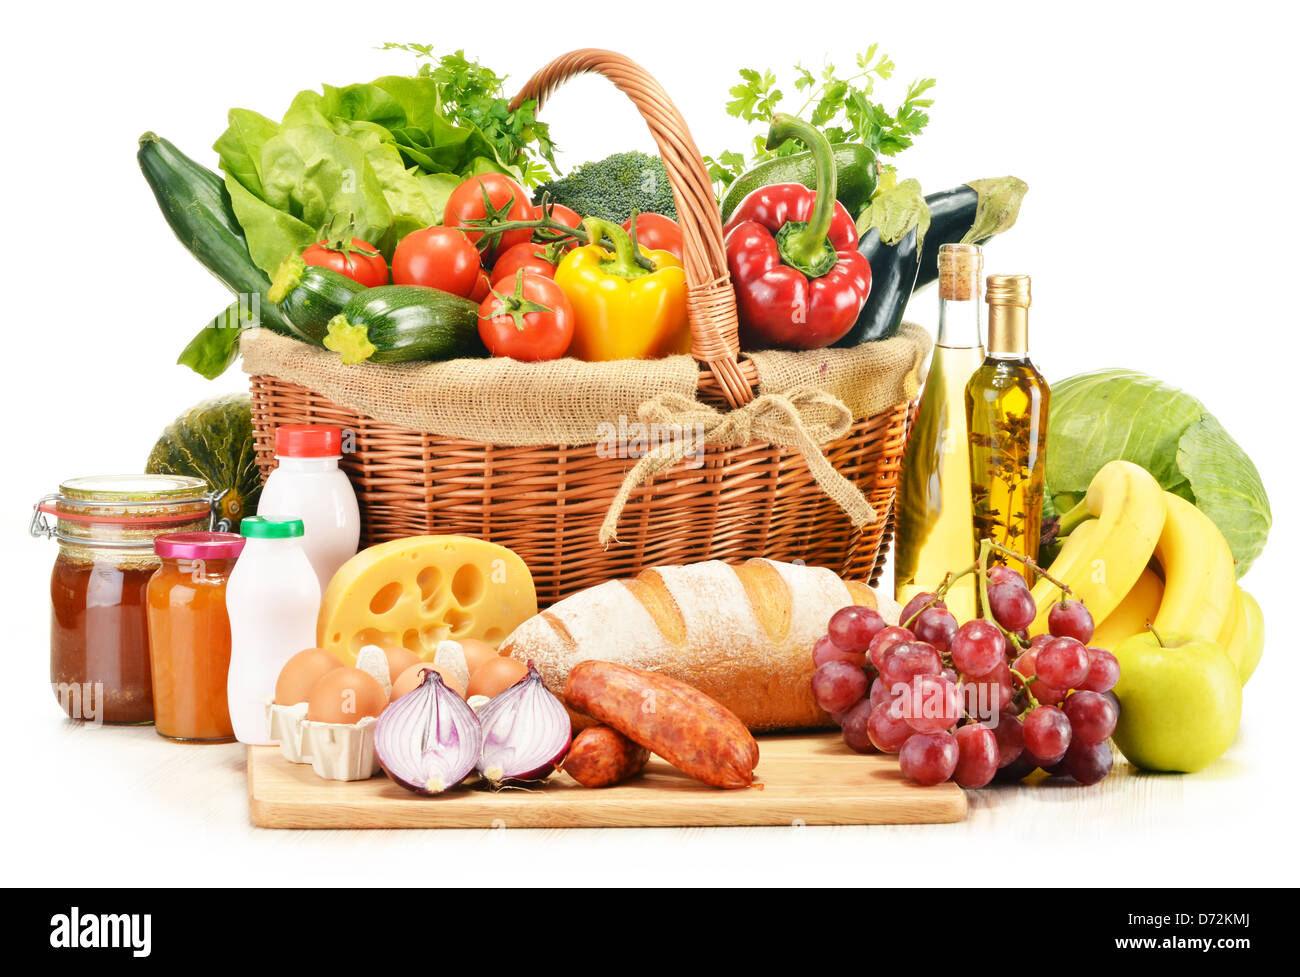 Un assortiment de produits d'épicerie légumes fruits pain vin y compris les produits laitiers et la viande Banque D'Images